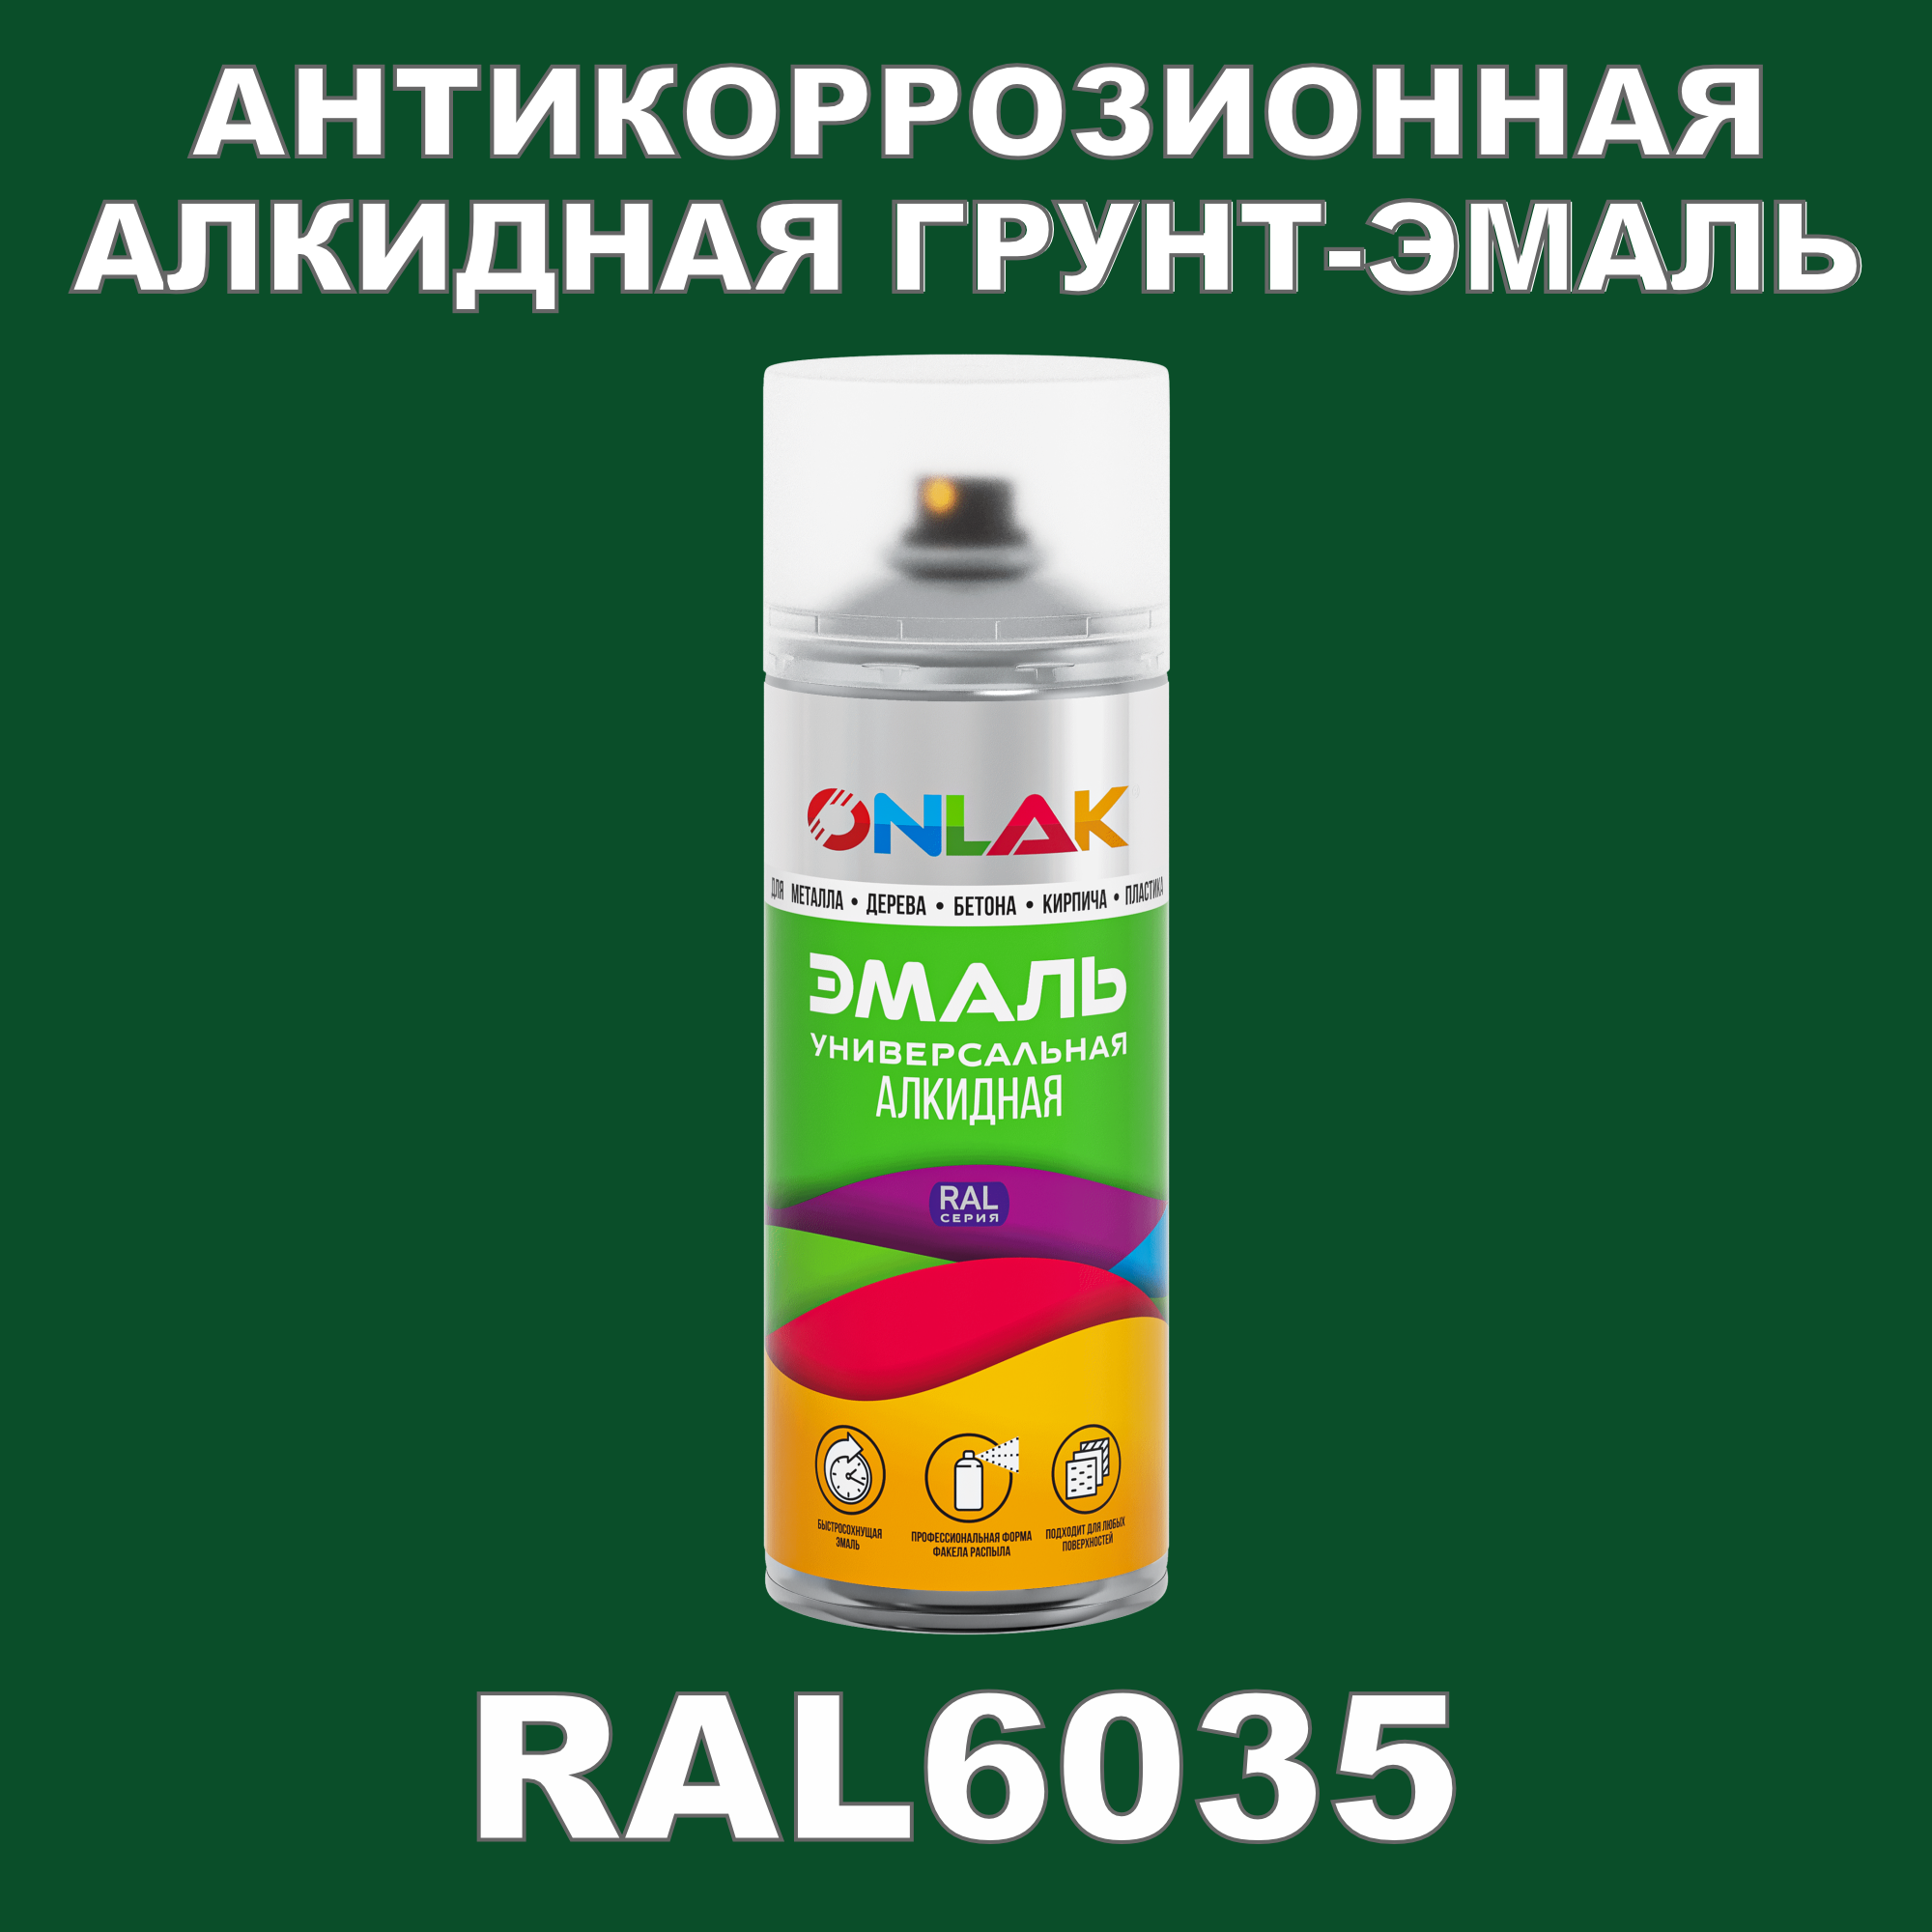 Антикоррозионная грунт-эмаль ONLAK RAL 6035,зеленый,624 мл